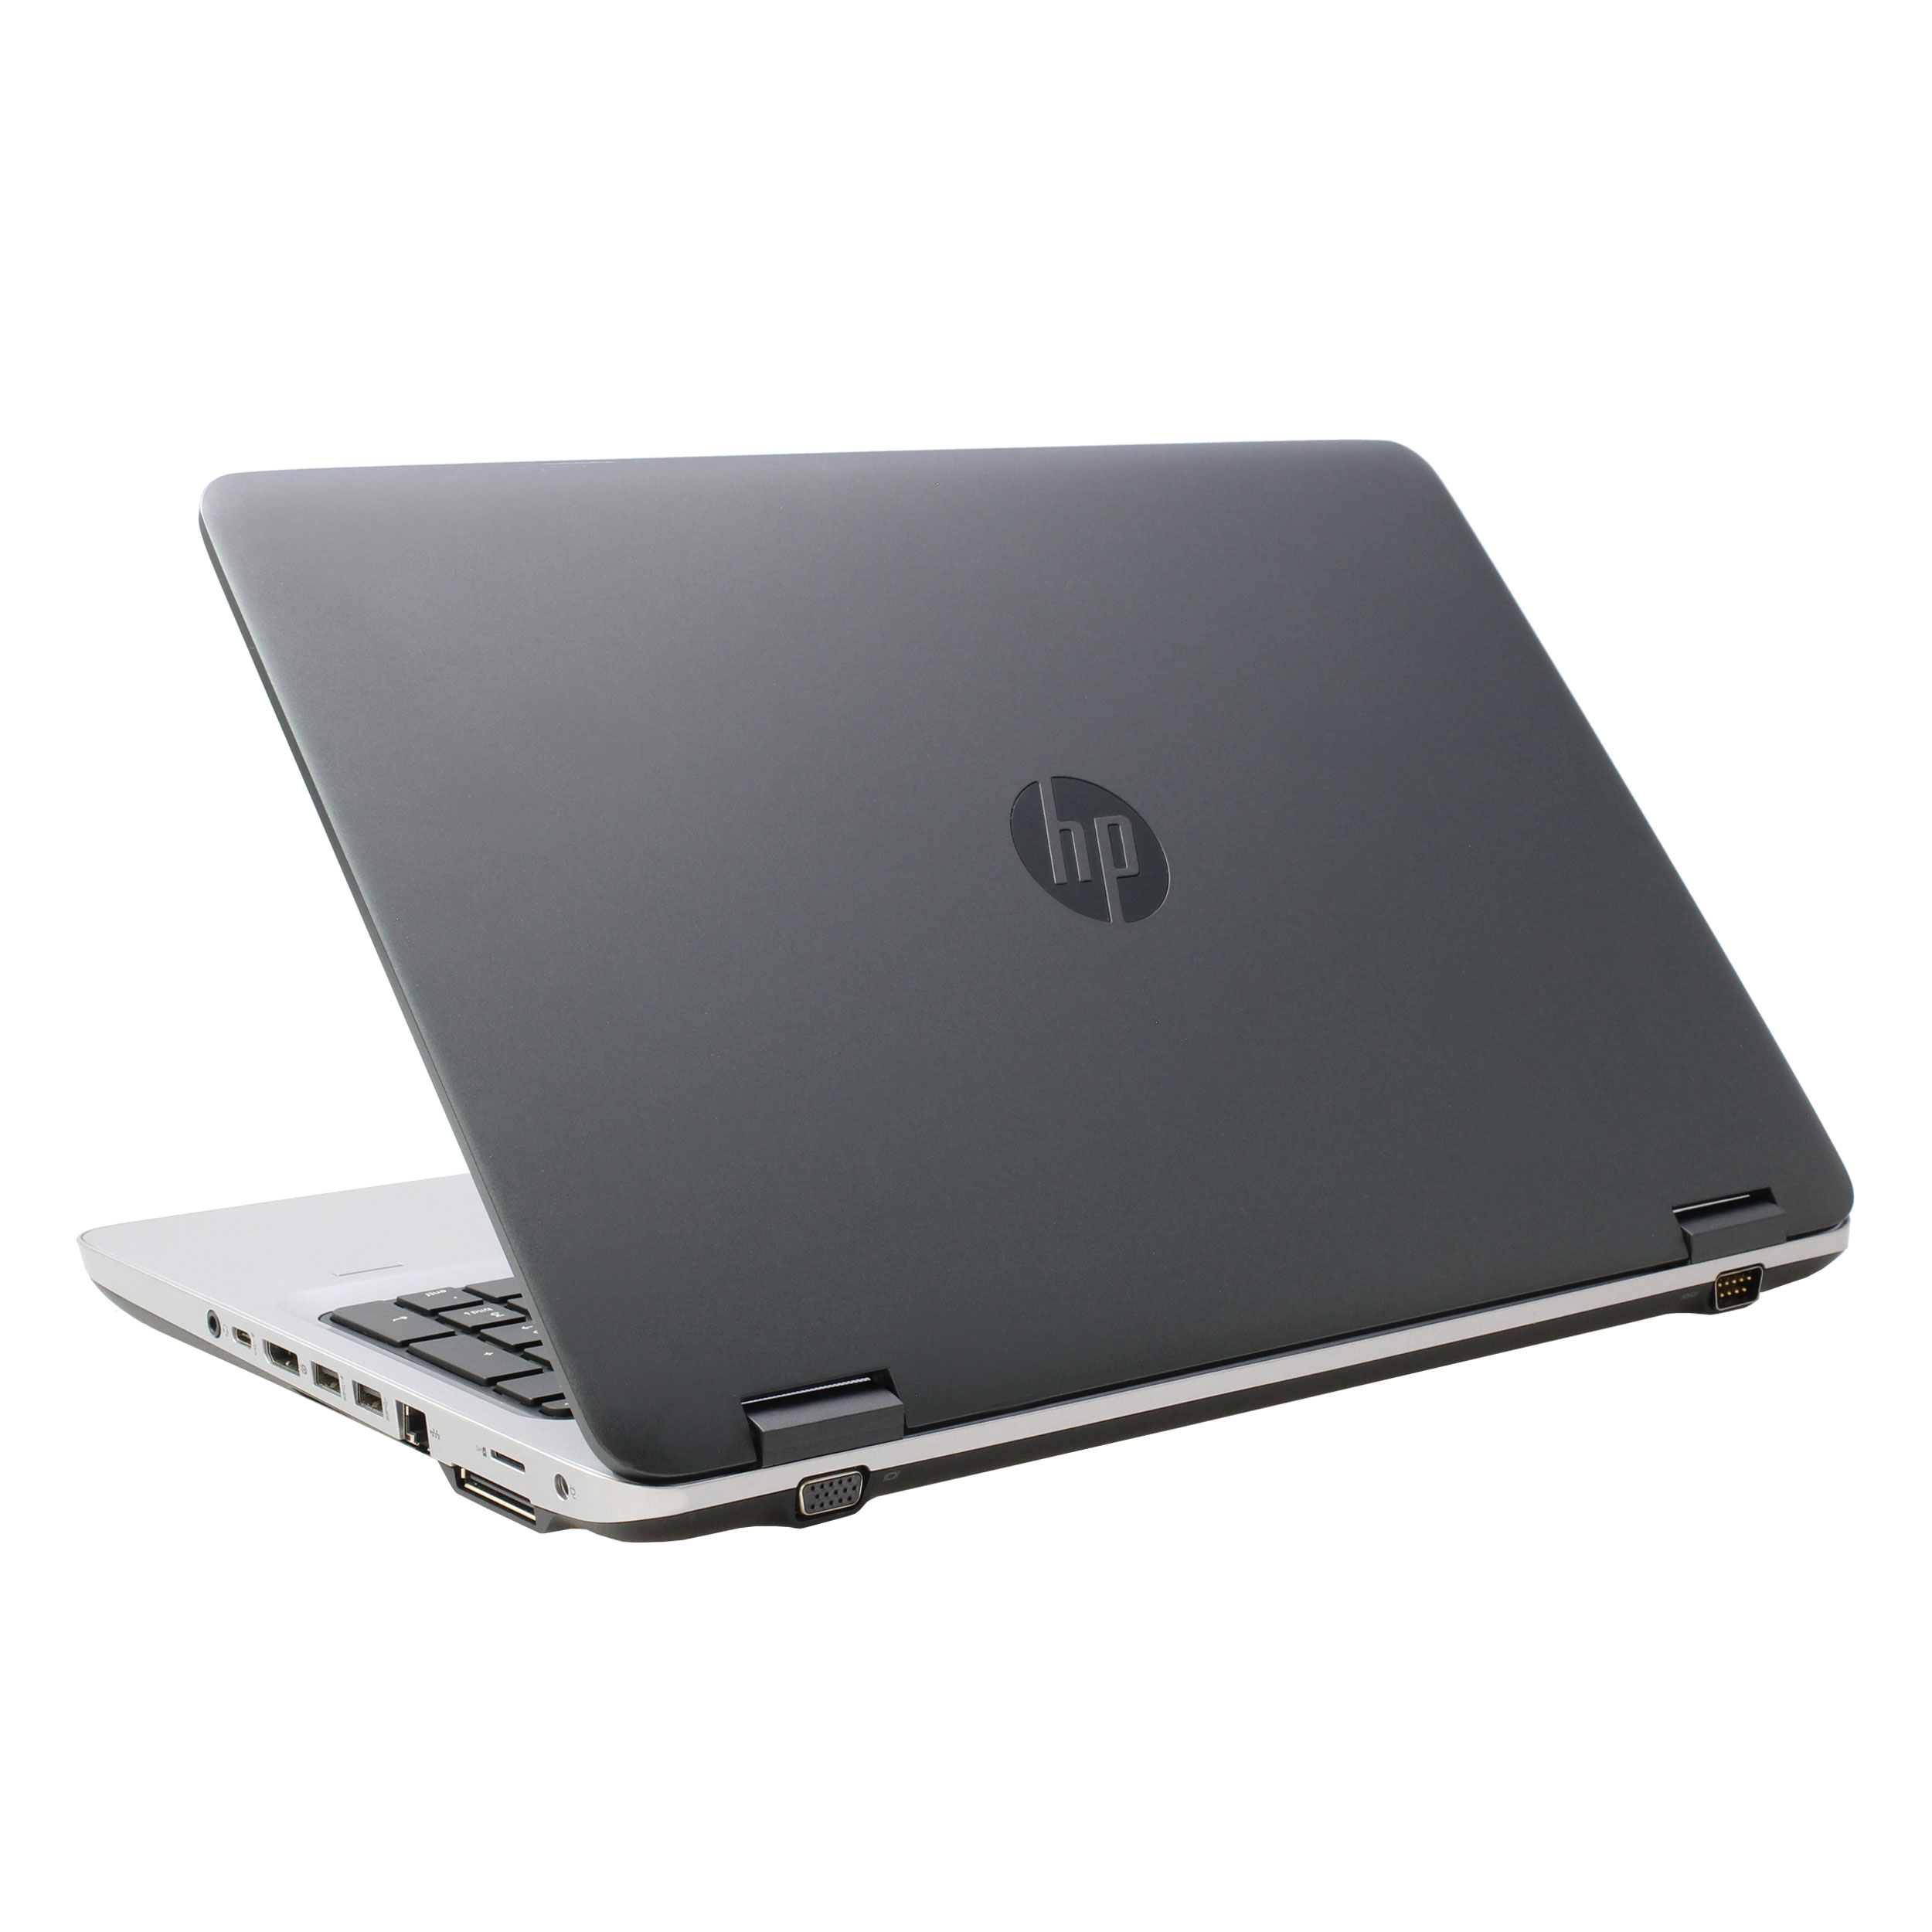 HP - HP ProBook 650 G2